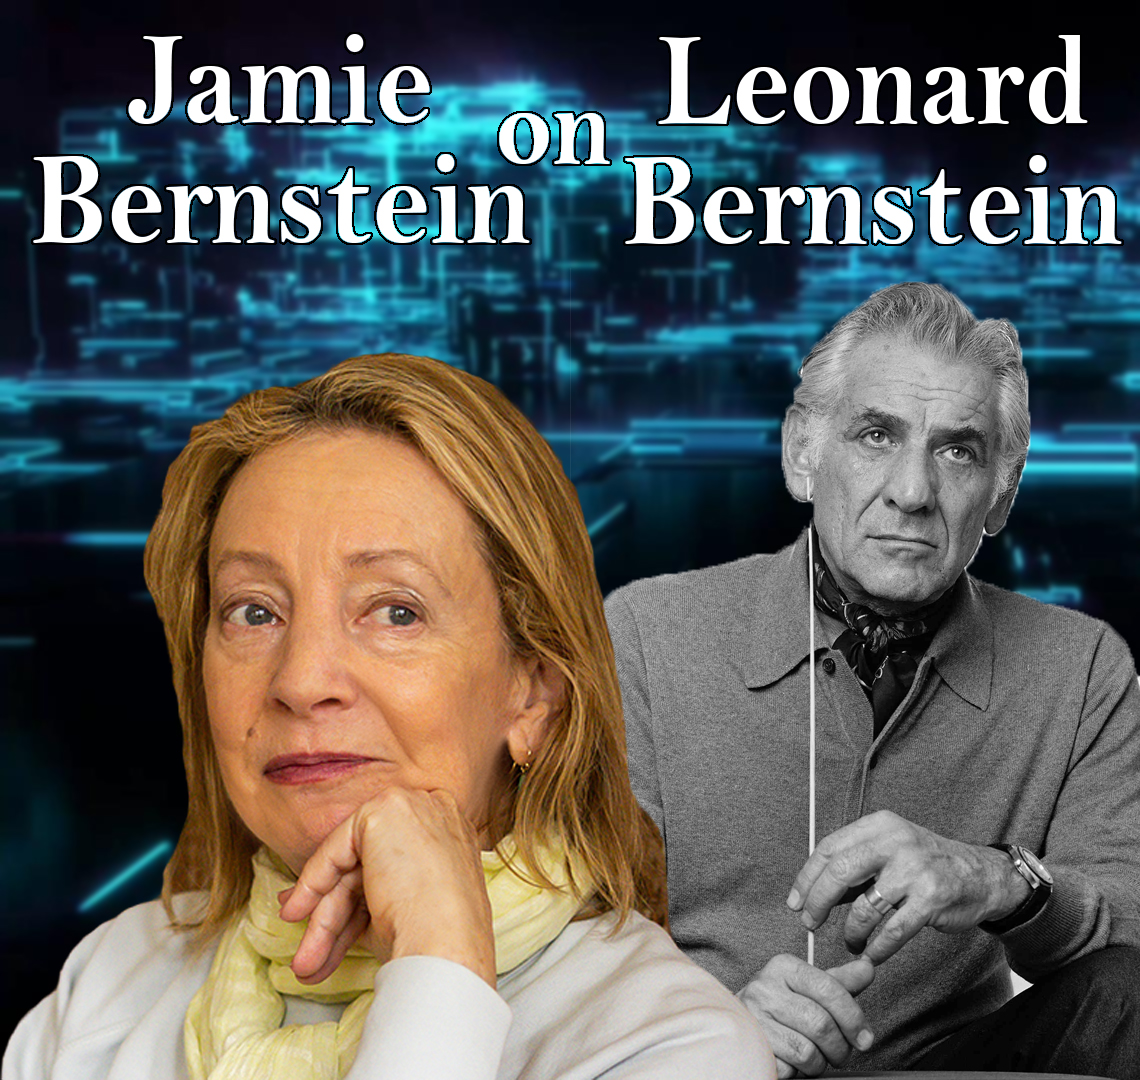 Jamie Bernstein (Daughter of Leonard Bernstein) Guests On Harvey Brownstone Interviews